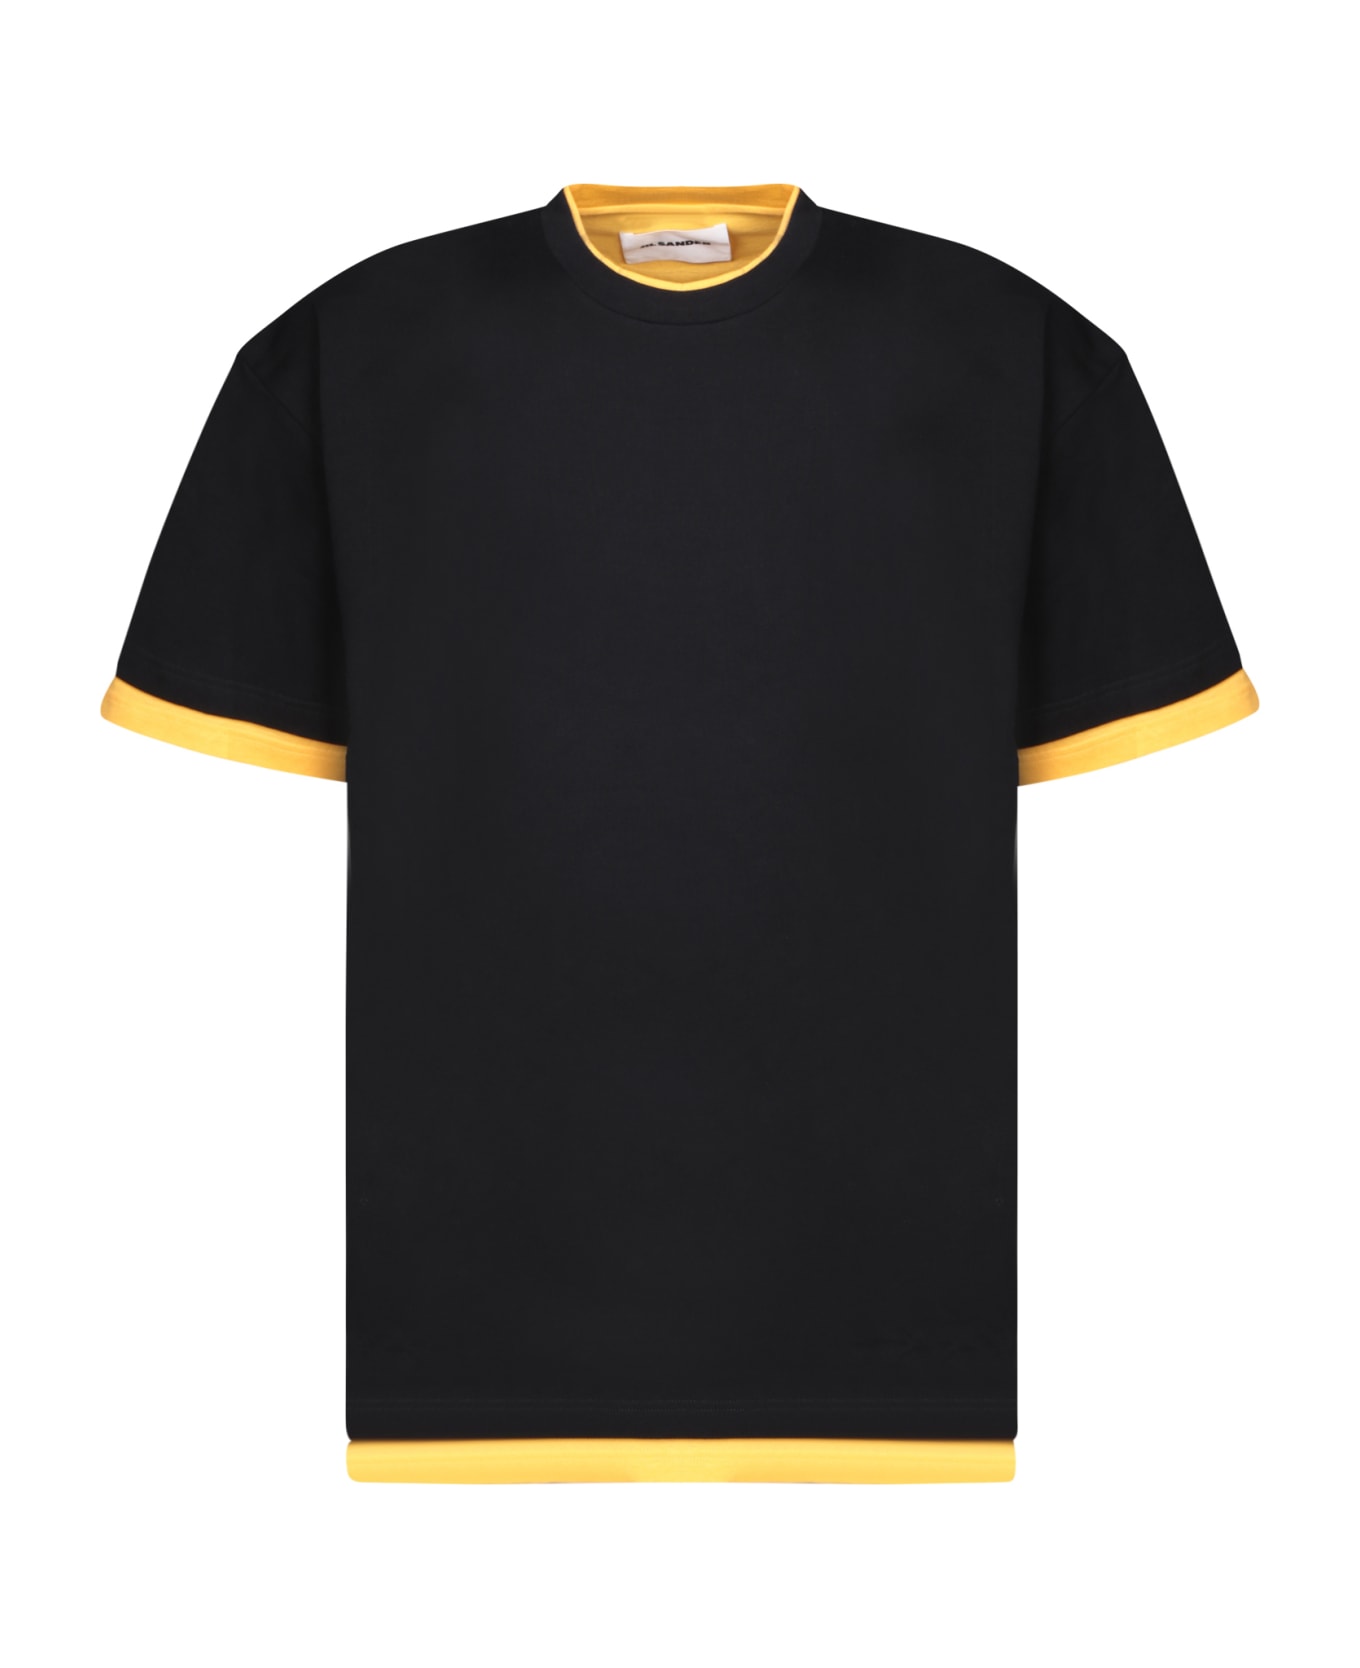 Jil Sander Contrasting Details Black T-shirt - Black